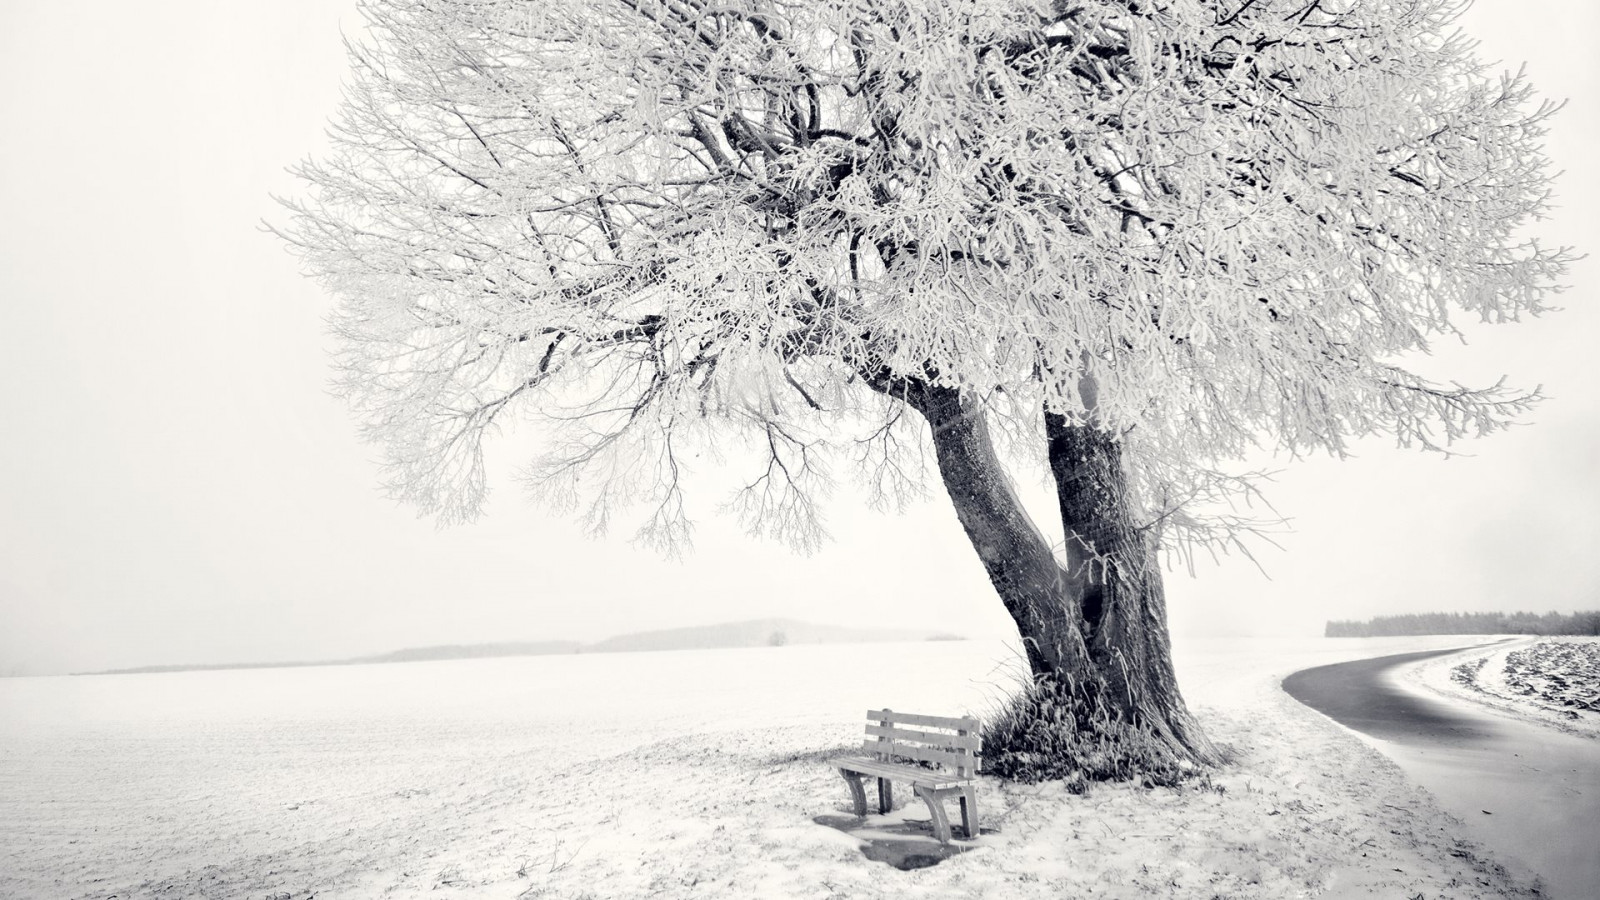 Frozen Winter landscape wallpaper 1600x900